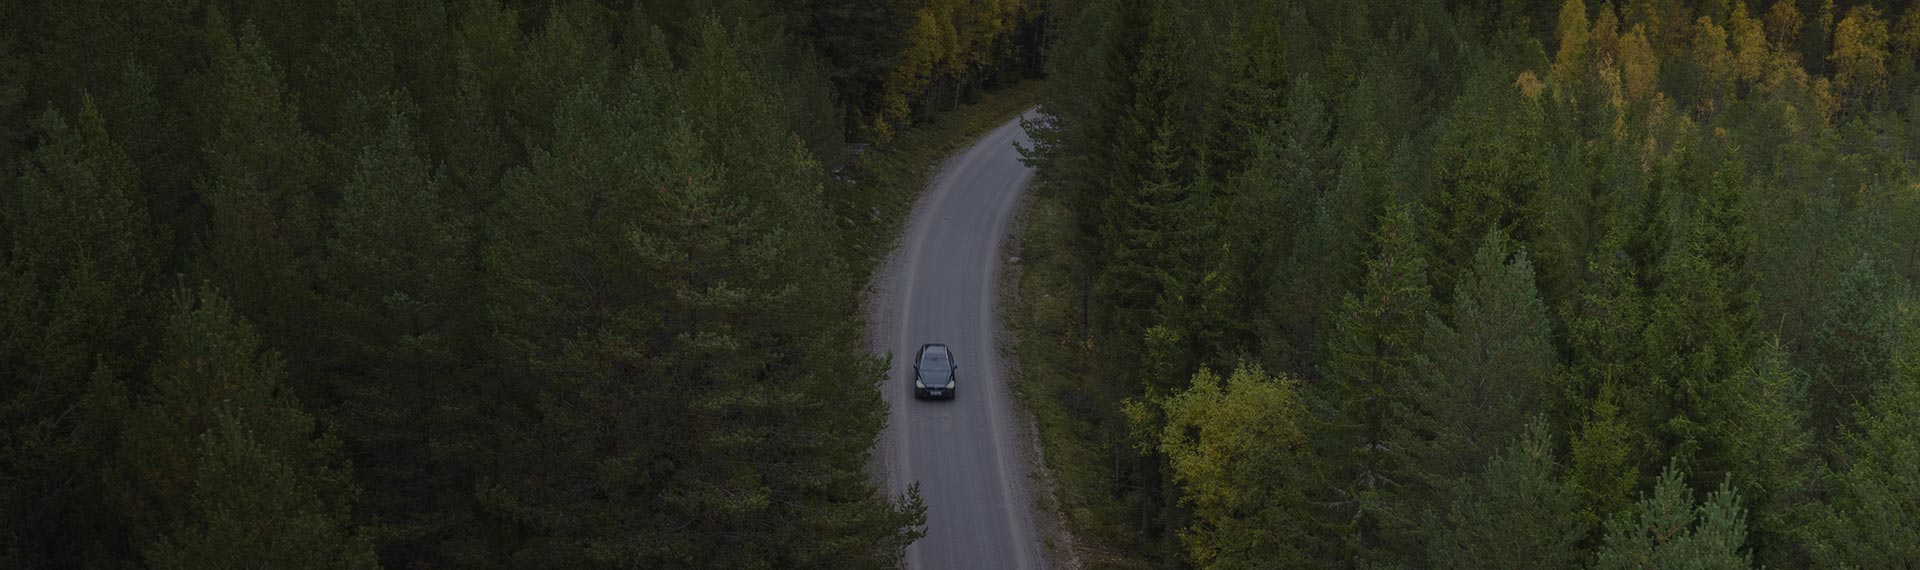 Автомобиль, проезжающий по лесной дороге